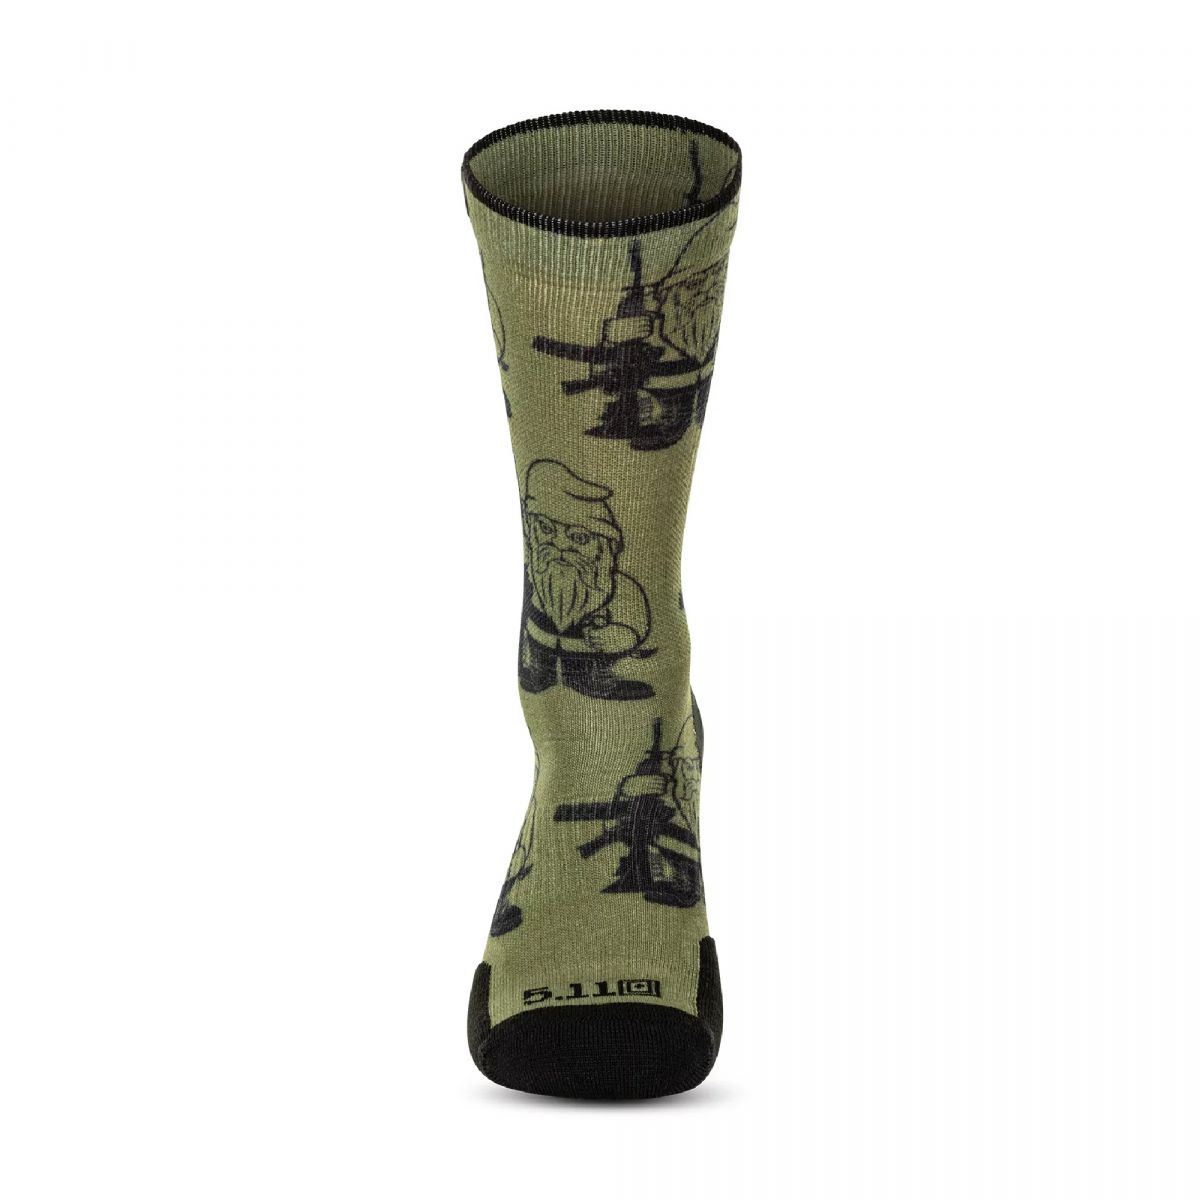 Шкарпетки 5.11 Tactical®. Модель Sock and Awe Gnome 3